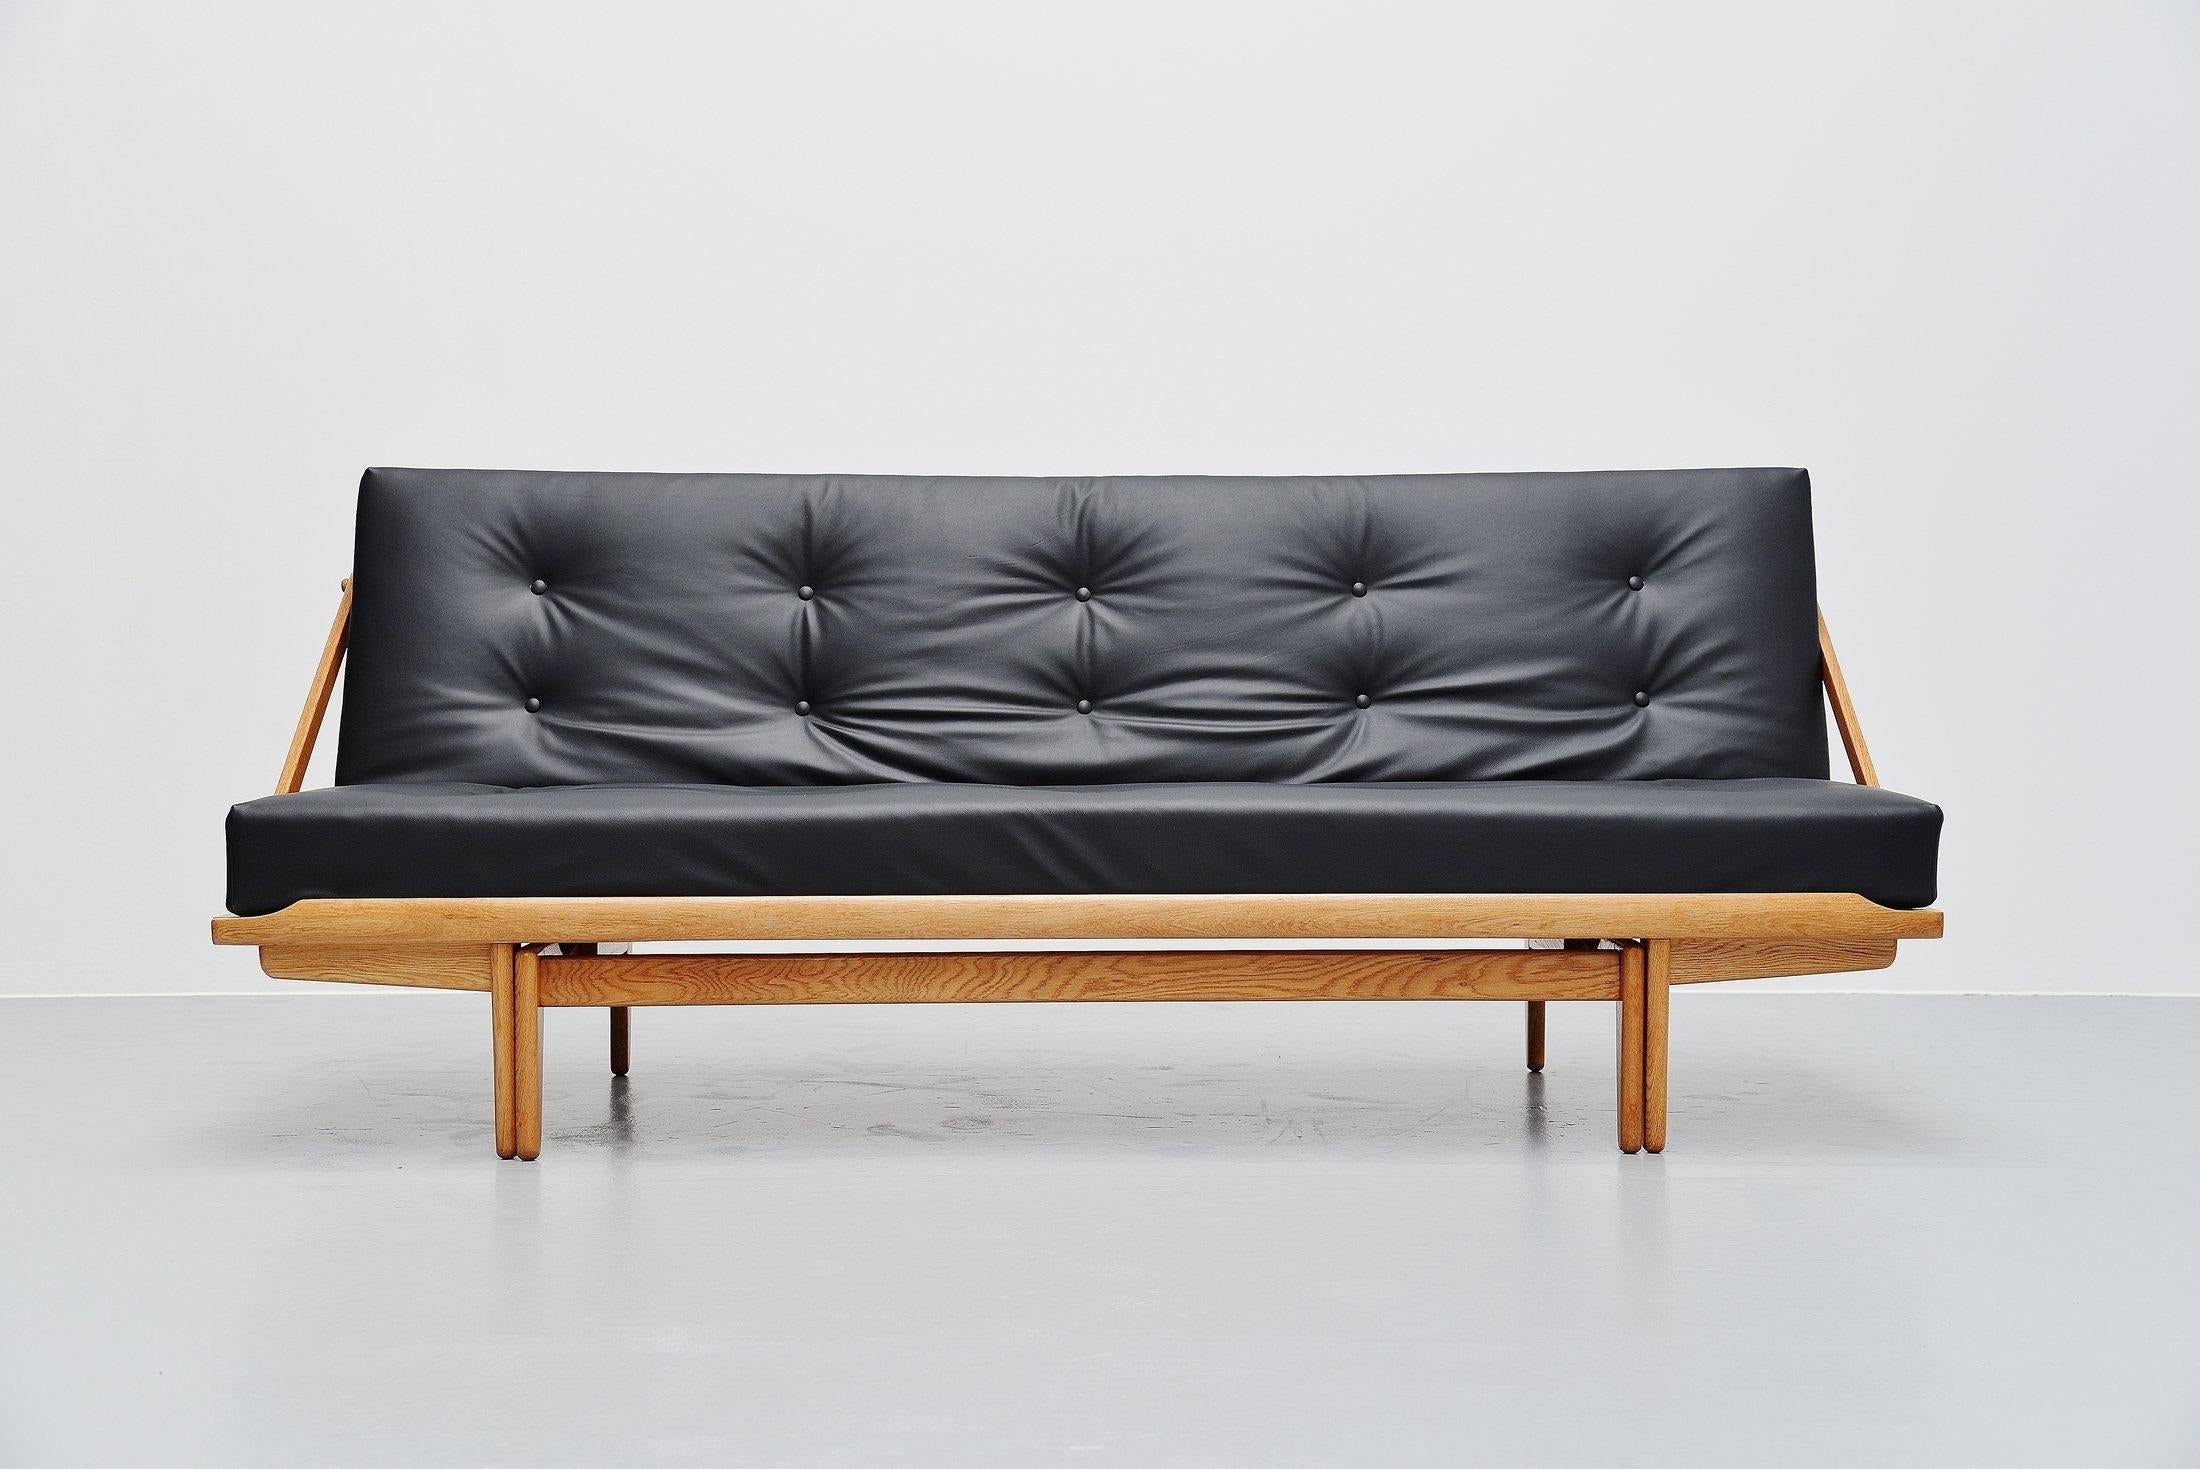 Sehr schönes, raffiniertes Daybed-Sofa Modell 981, entworfen von Poul M Volther und hergestellt von Gemla, Dänemark, 1959. Dieses Sofa heißt Diva